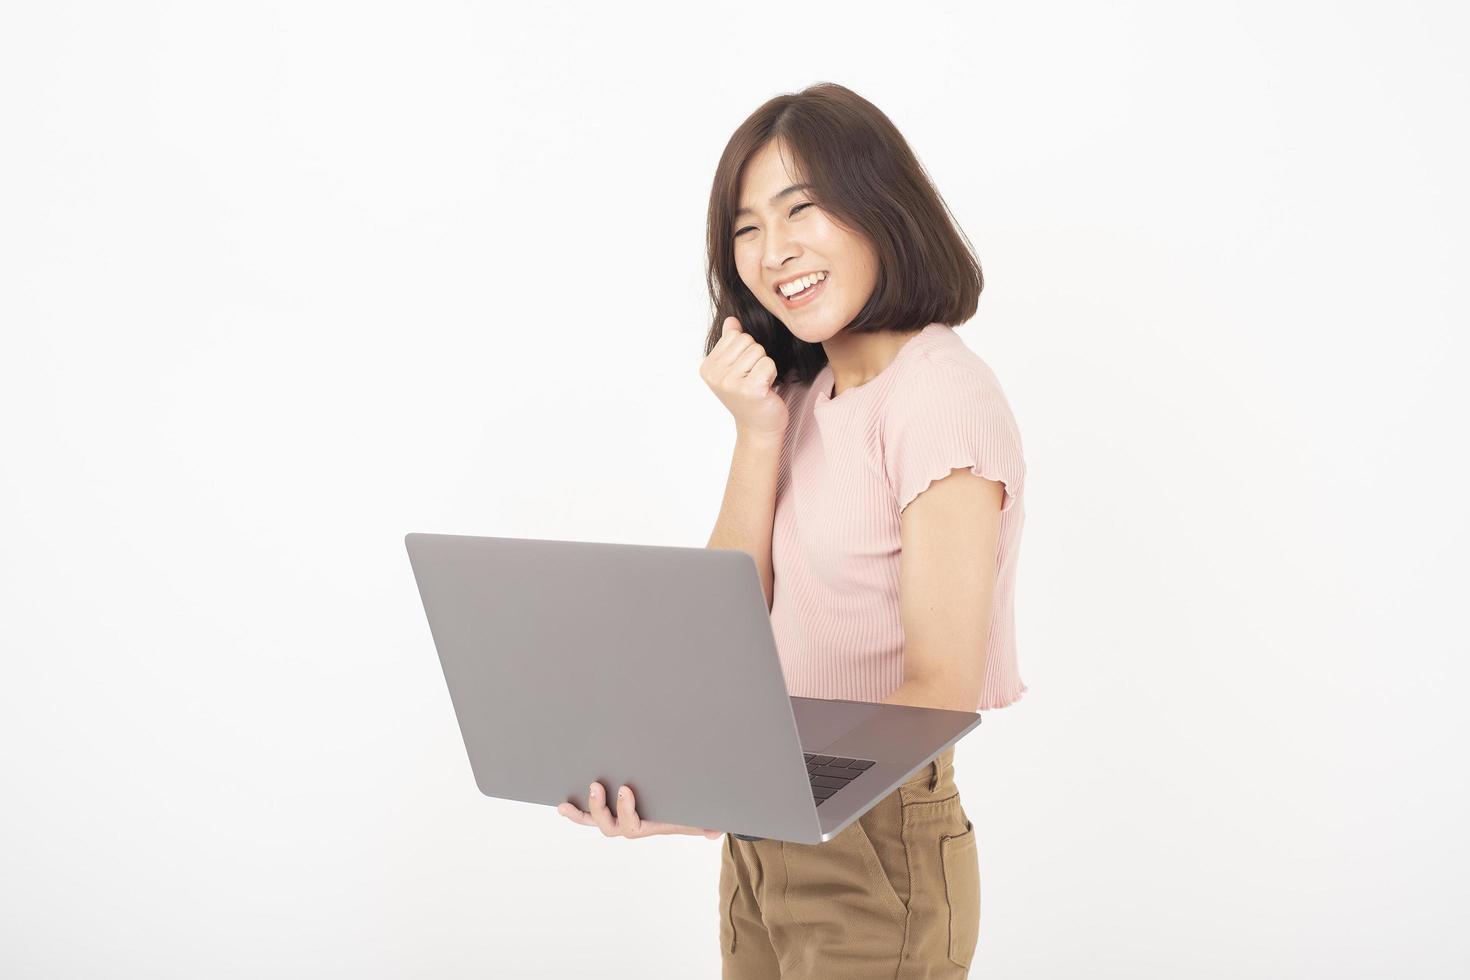 la donna teenager asiatica sveglia sta lavorando con il computer su priorità bassa bianca foto